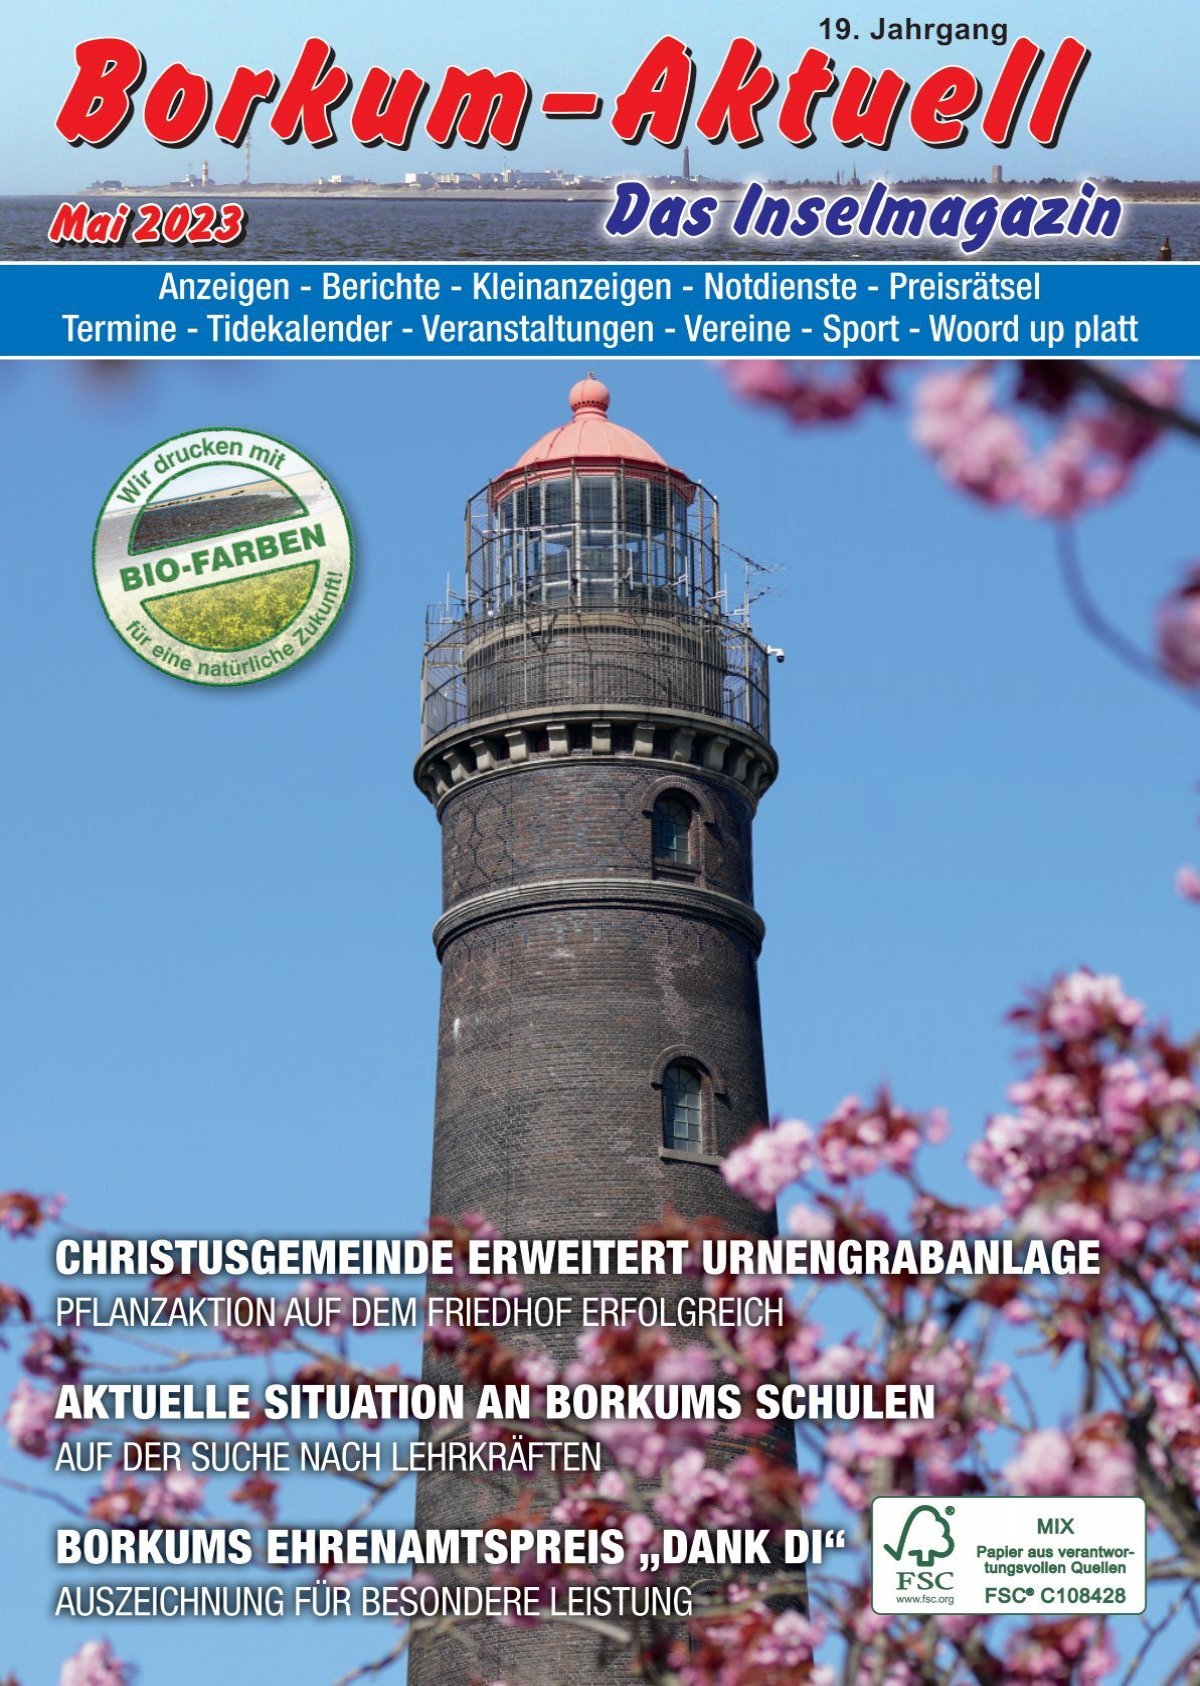 Mai 2023 / Borkum-Aktuell - Das Inselmagazin